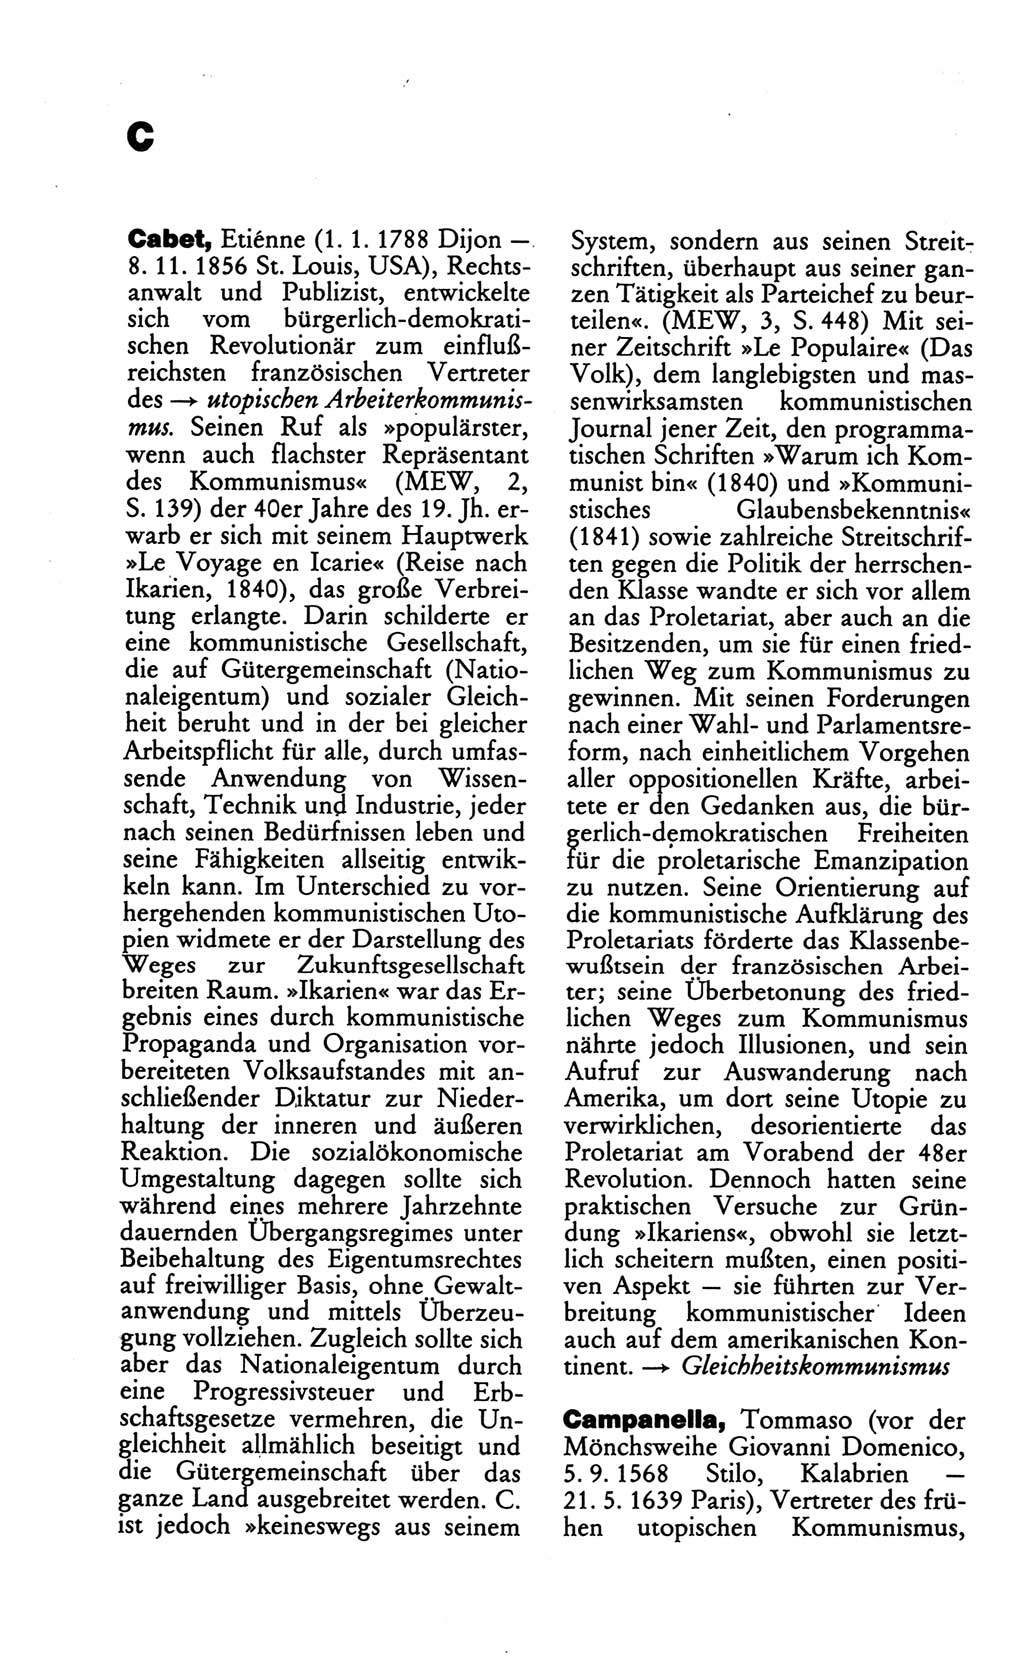 Wörterbuch des wissenschaftlichen Kommunismus [Deutsche Demokratische Republik (DDR)] 1986, Seite 68 (Wb. wiss. Komm. DDR 1986, S. 68)